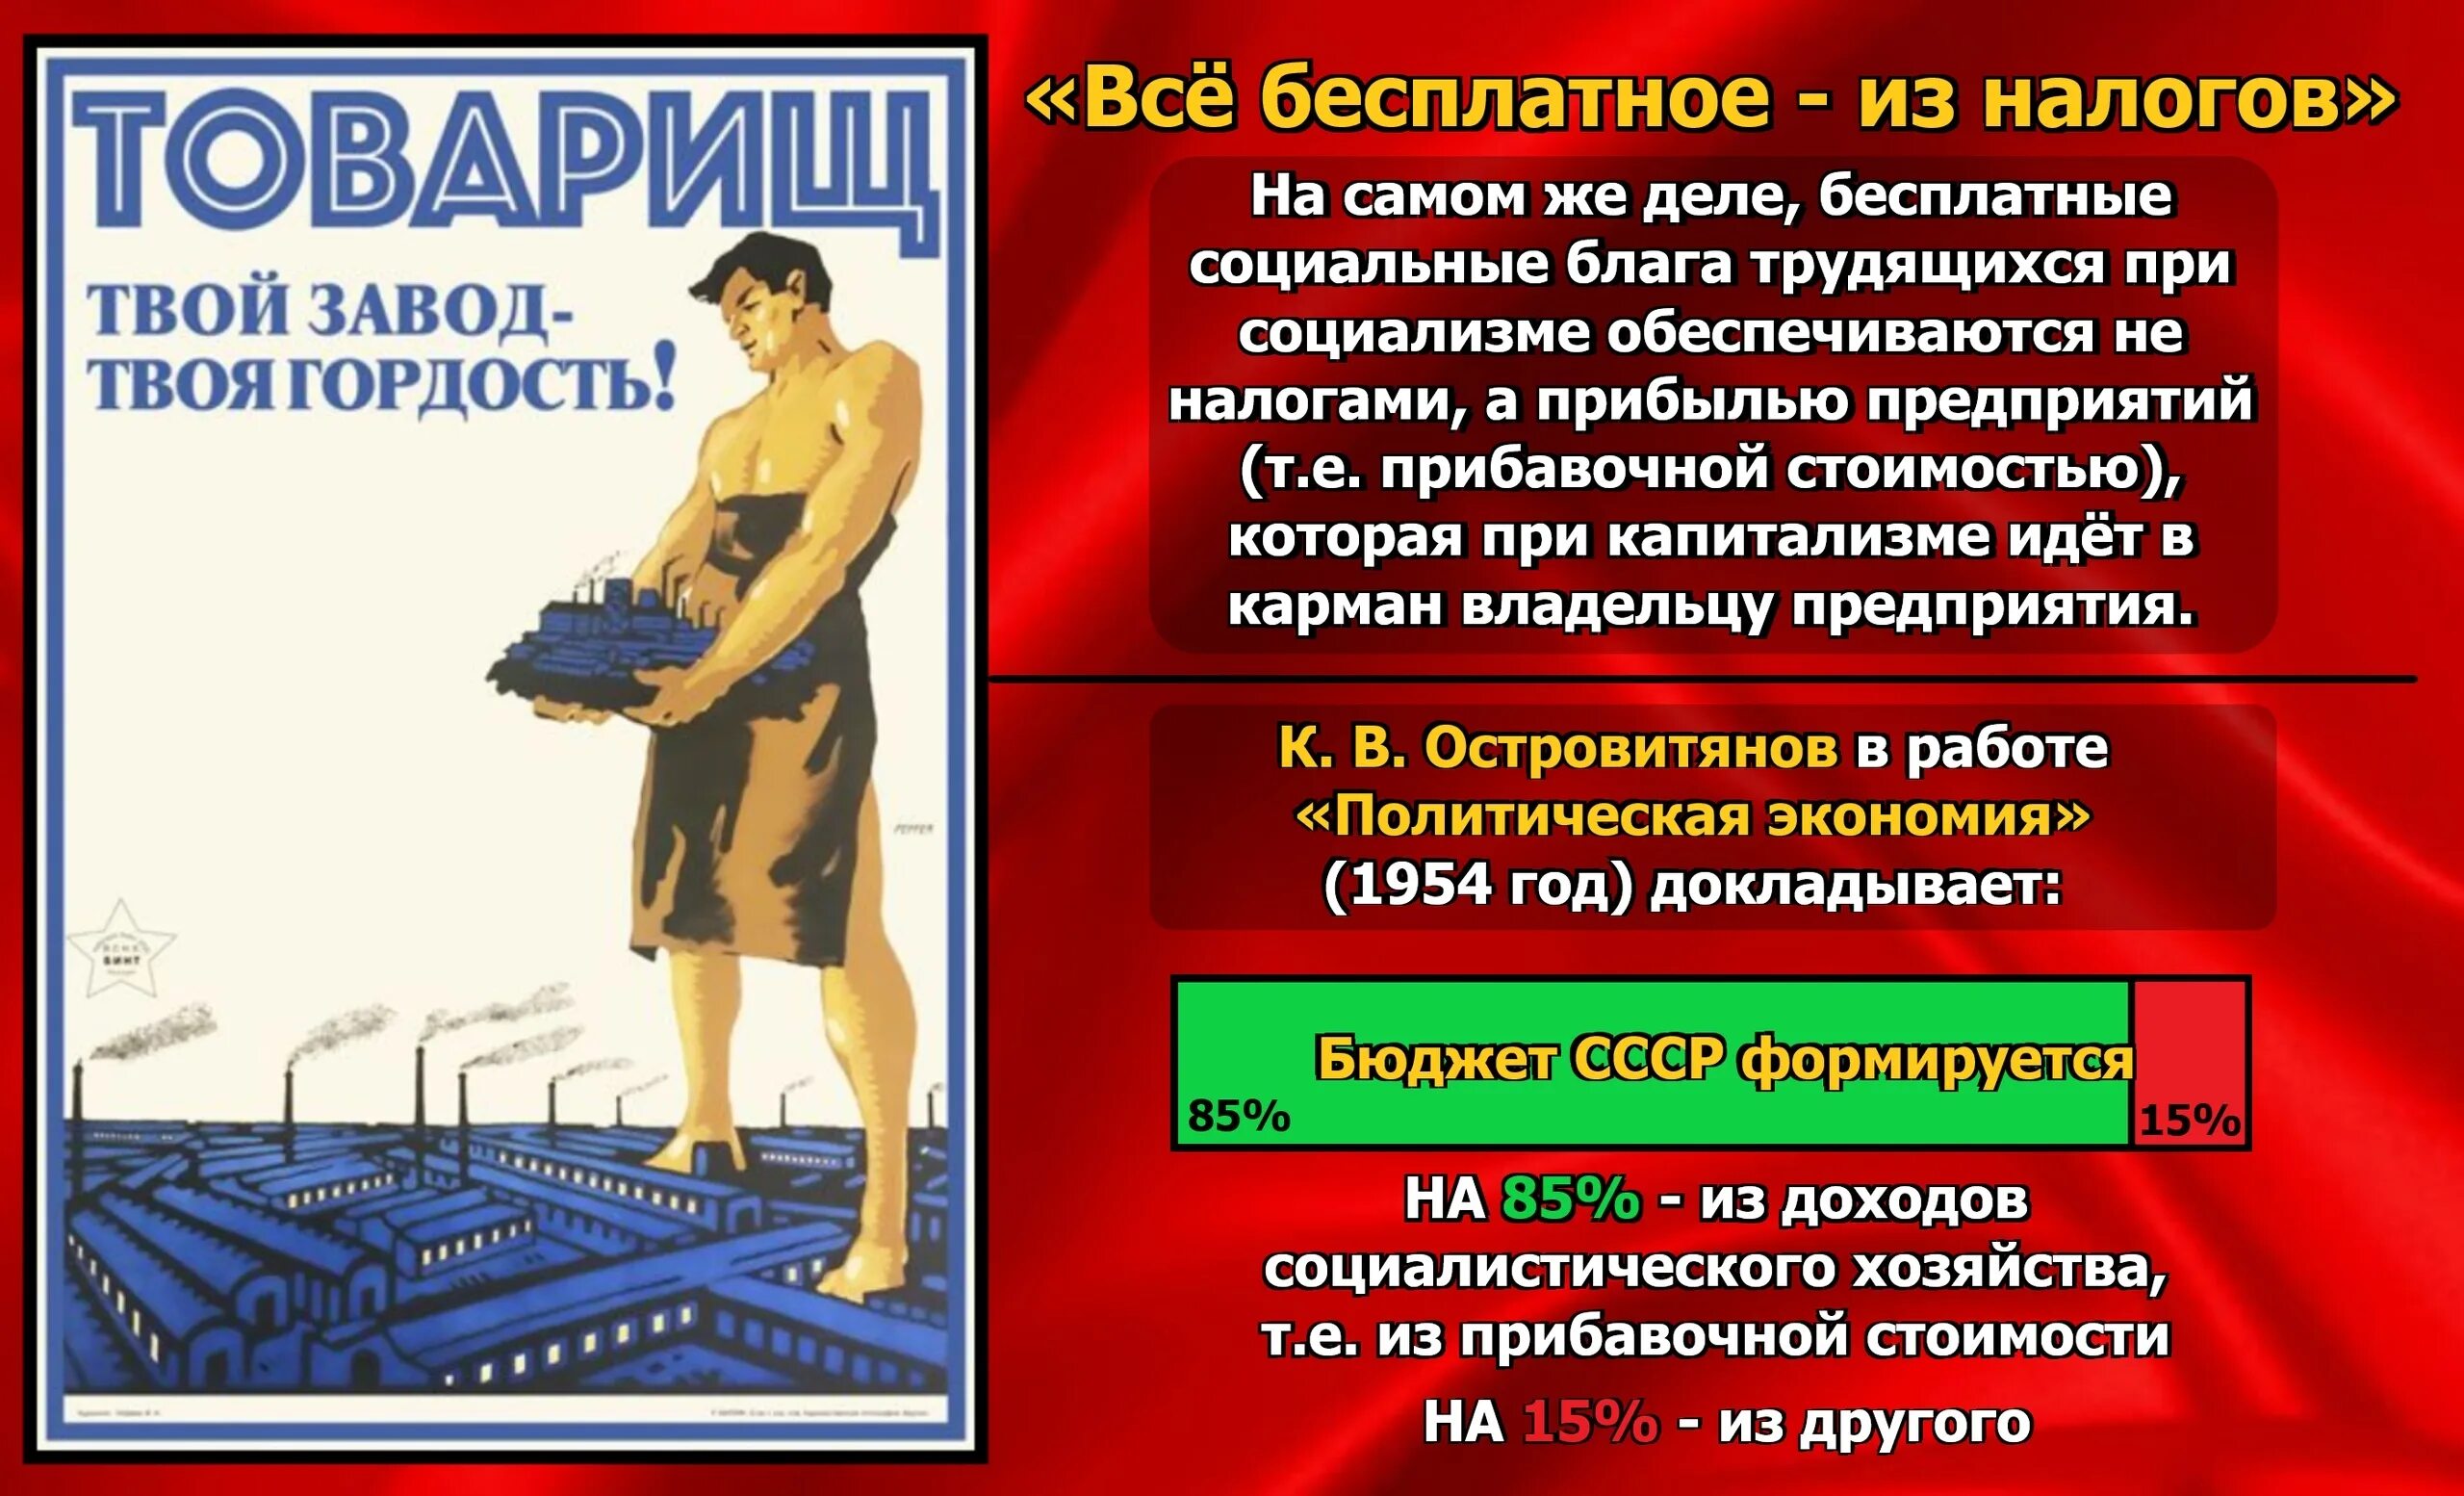 Когда был социализм. При капитализме и при социализме. Советские плакаты про капиталистов. Капитализм и социализм. Советские плакаты при капитализме.